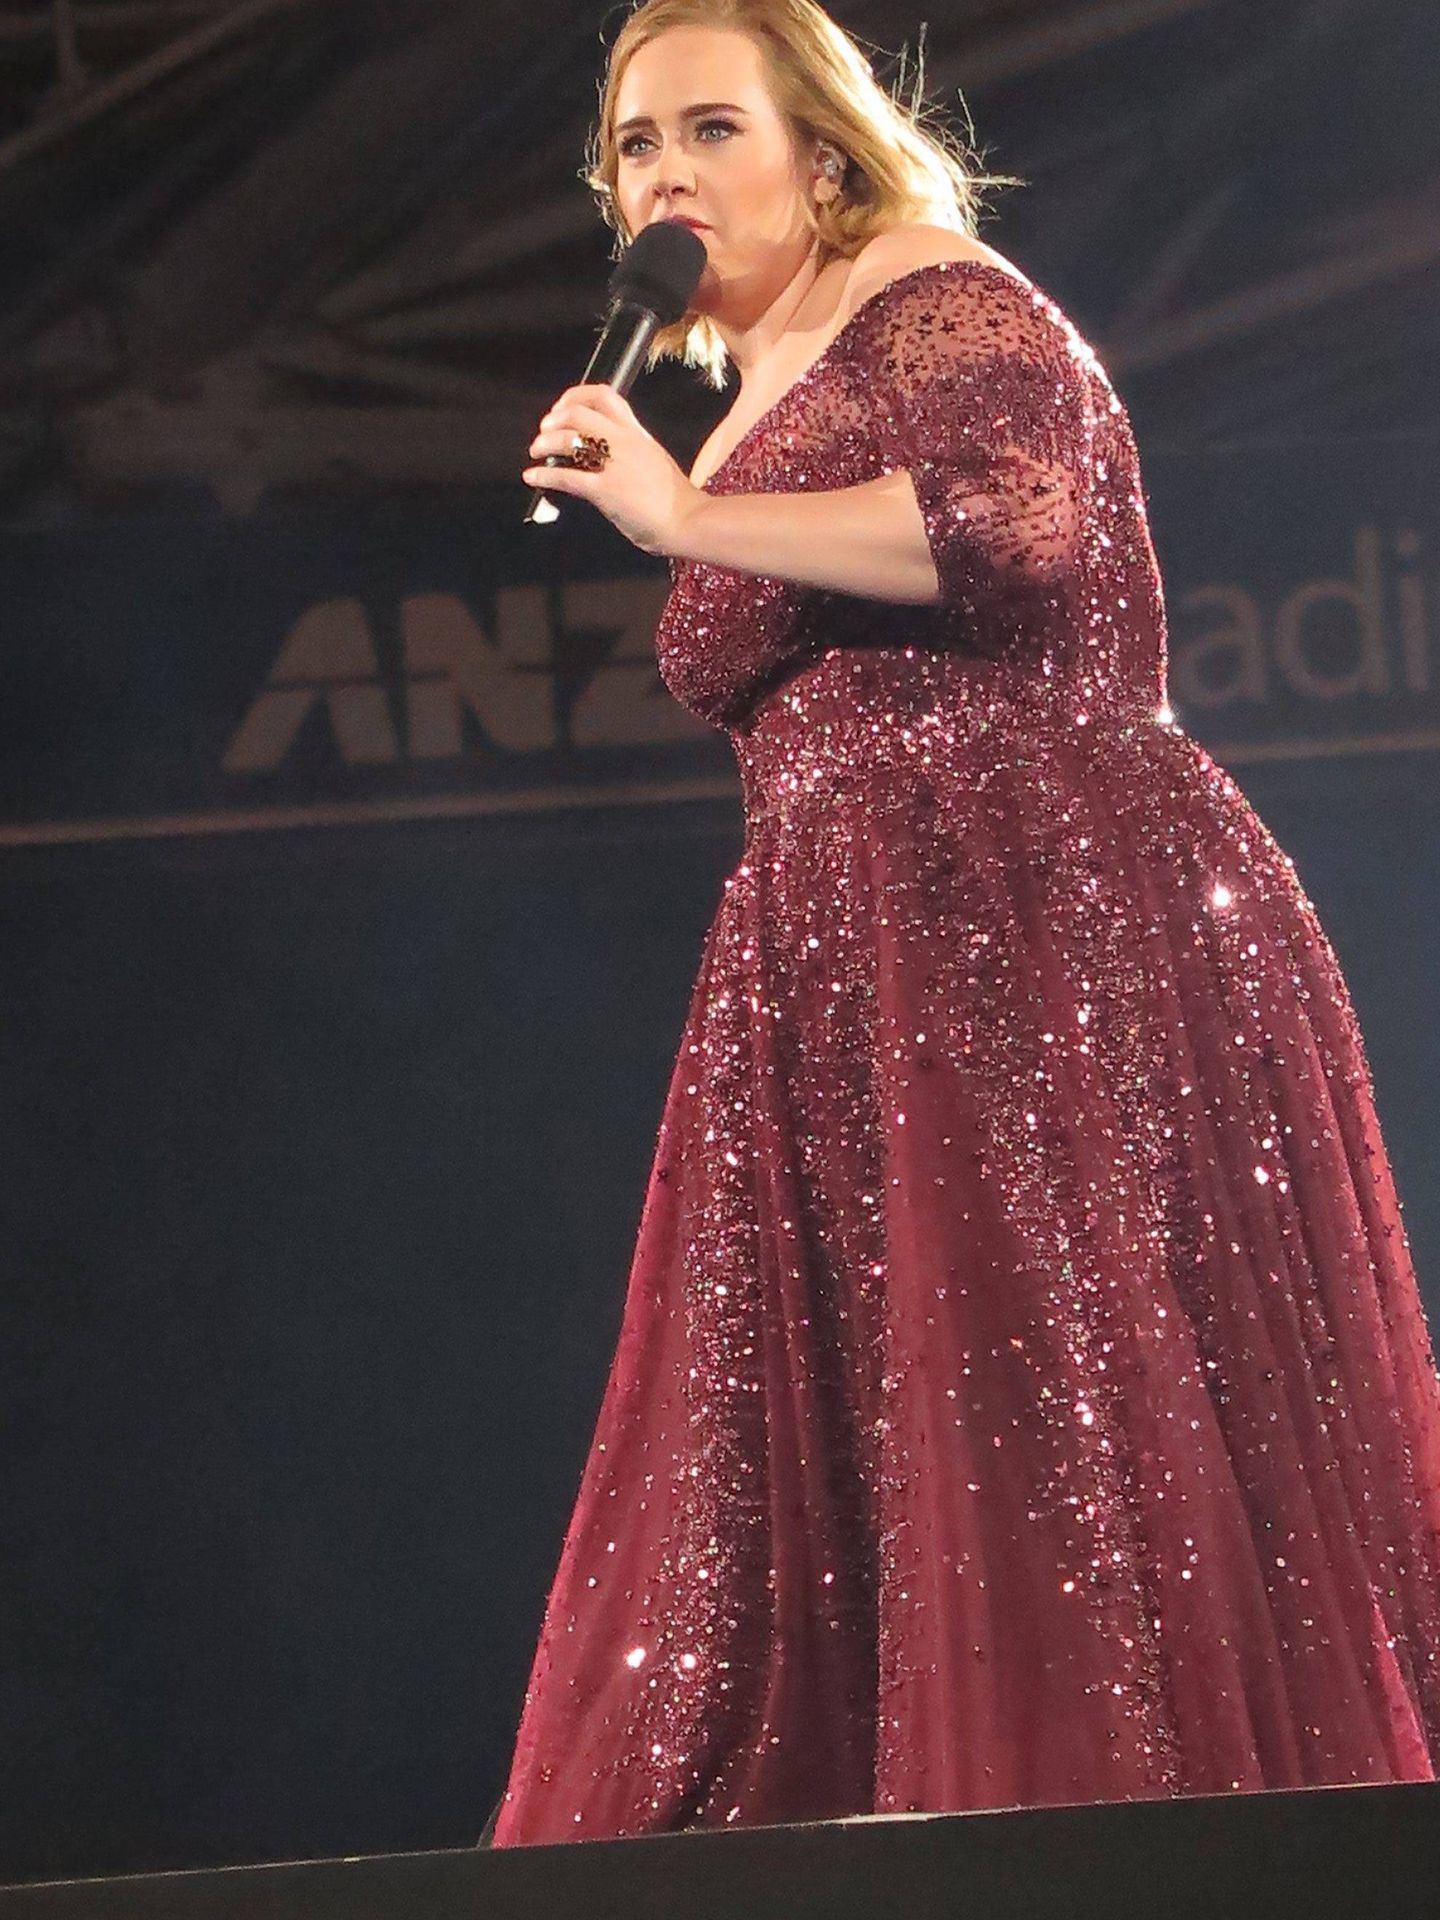  Adele, durante un concierto en Australia. (CP)